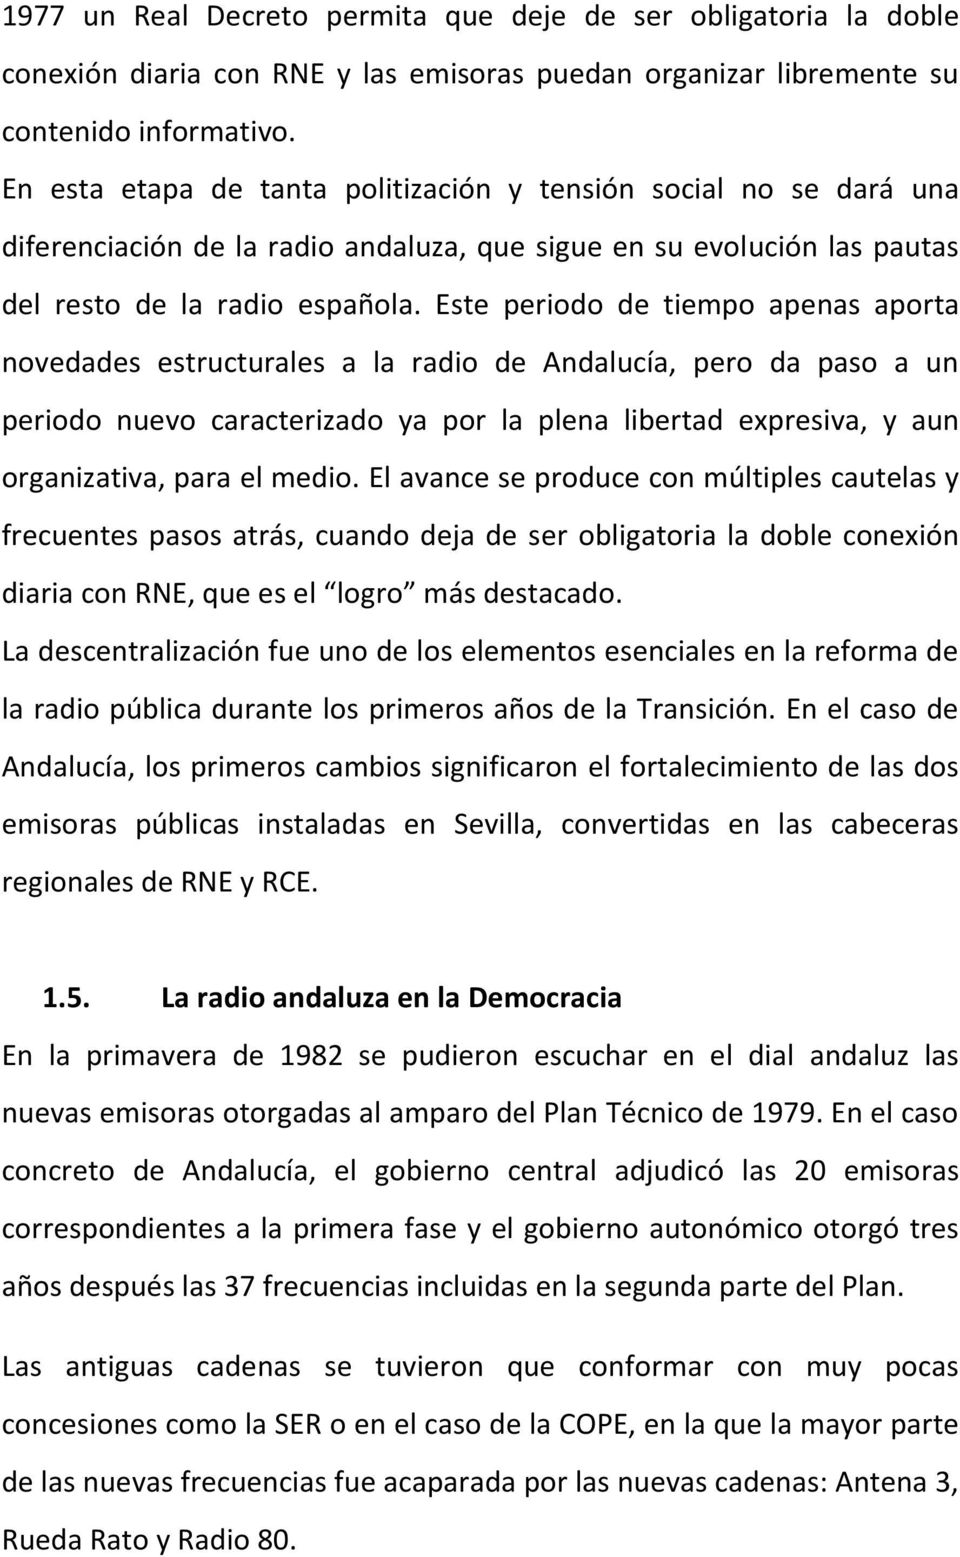 Este periodo de tiempo apenas aporta novedades estructurales a la radio de Andalucía, pero da paso a un periodo nuevo caracterizado ya por la plena libertad expresiva, y aun organizativa, para el